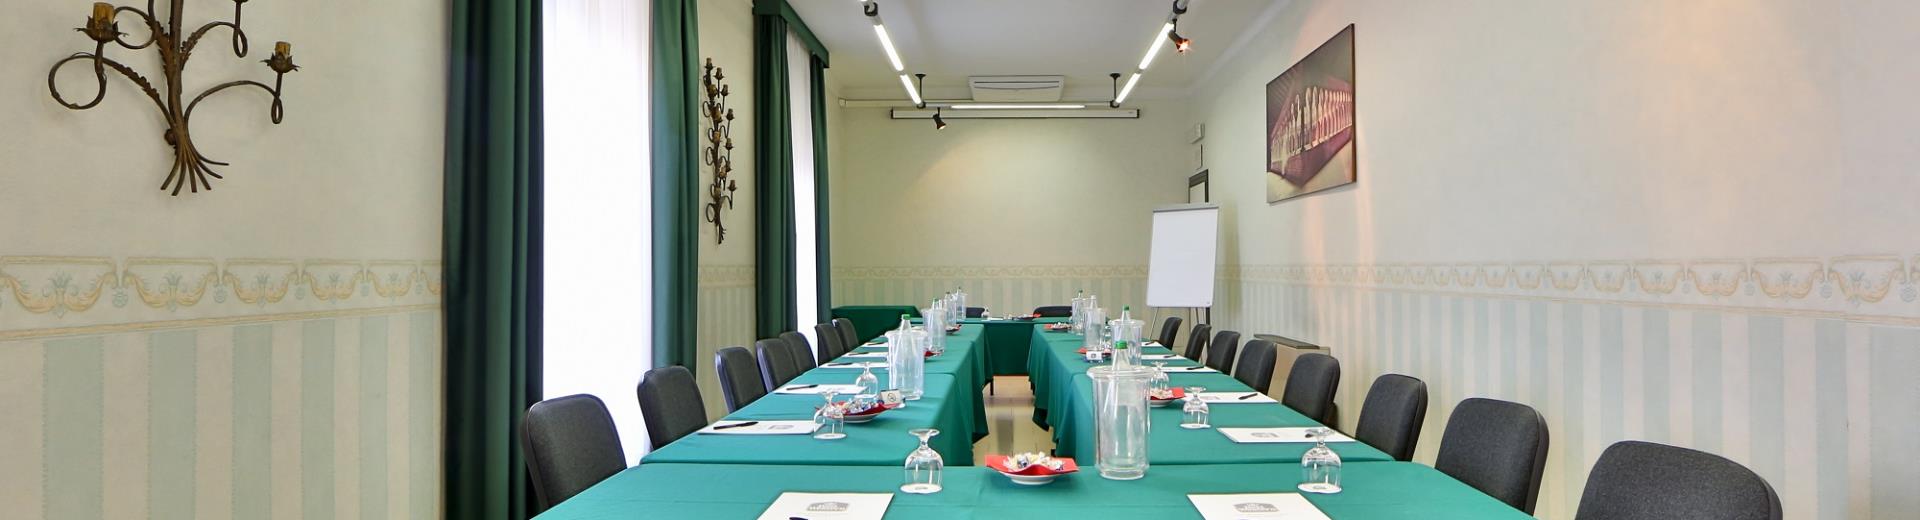 Salas de reuniones y salones en el Hotel San Donato Bologna